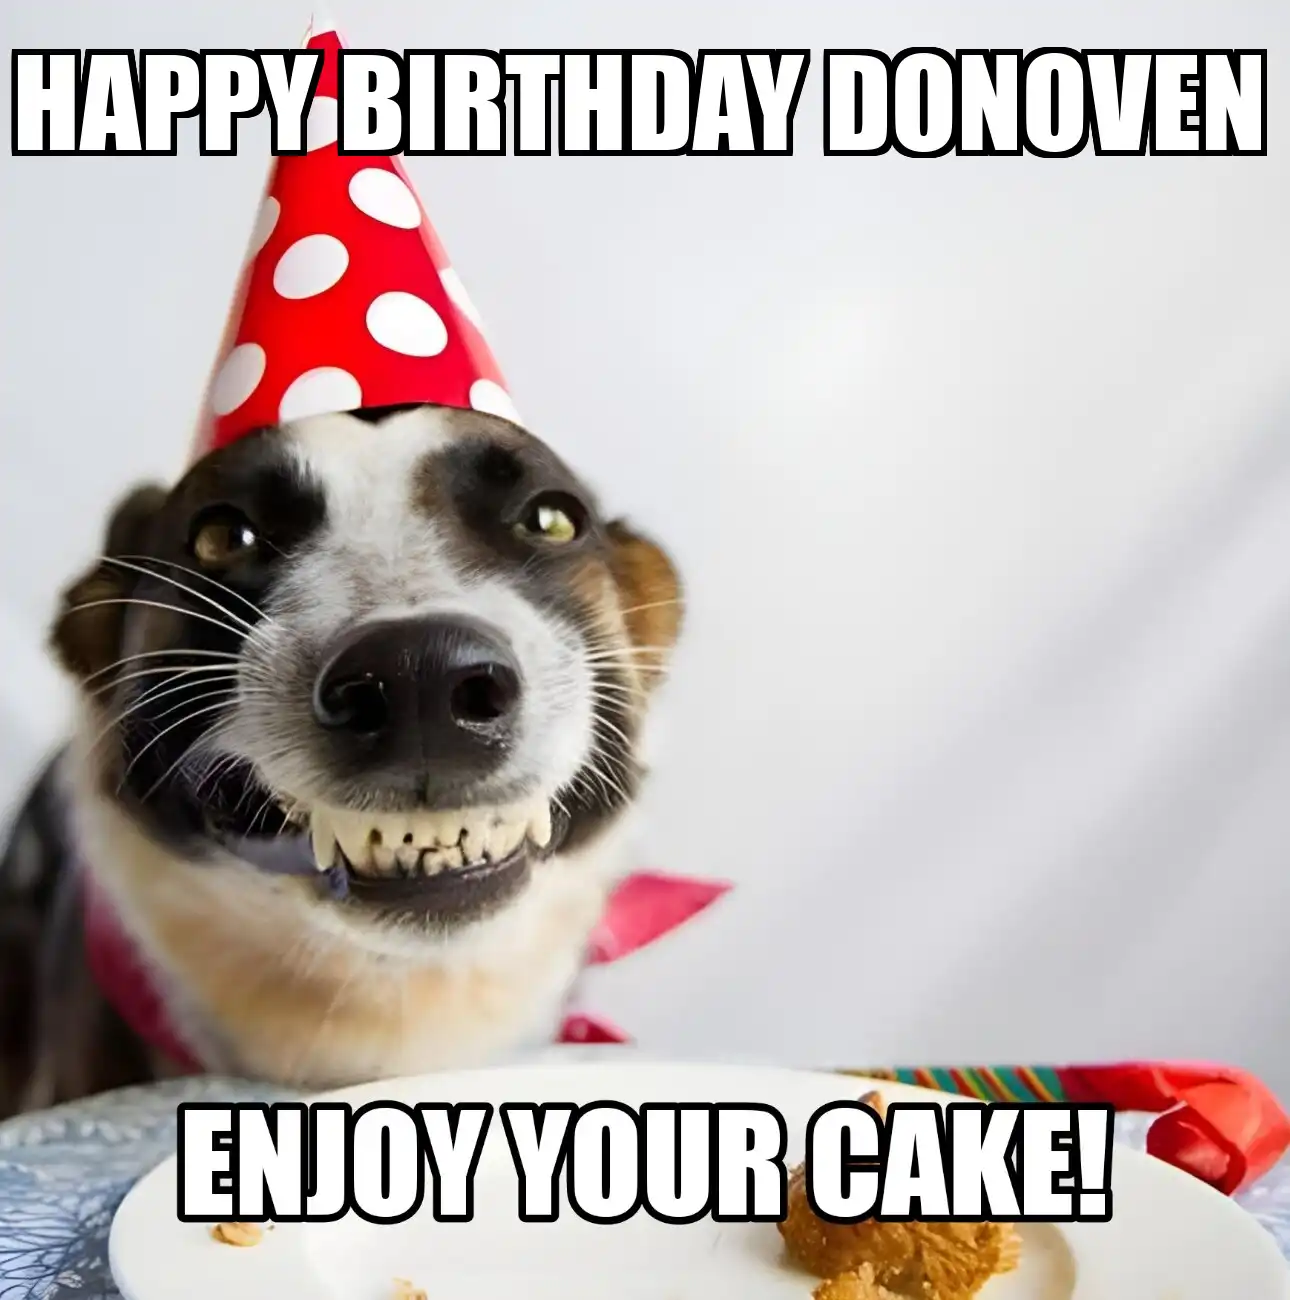 Happy Birthday Donoven Enjoy Your Cake Dog Meme